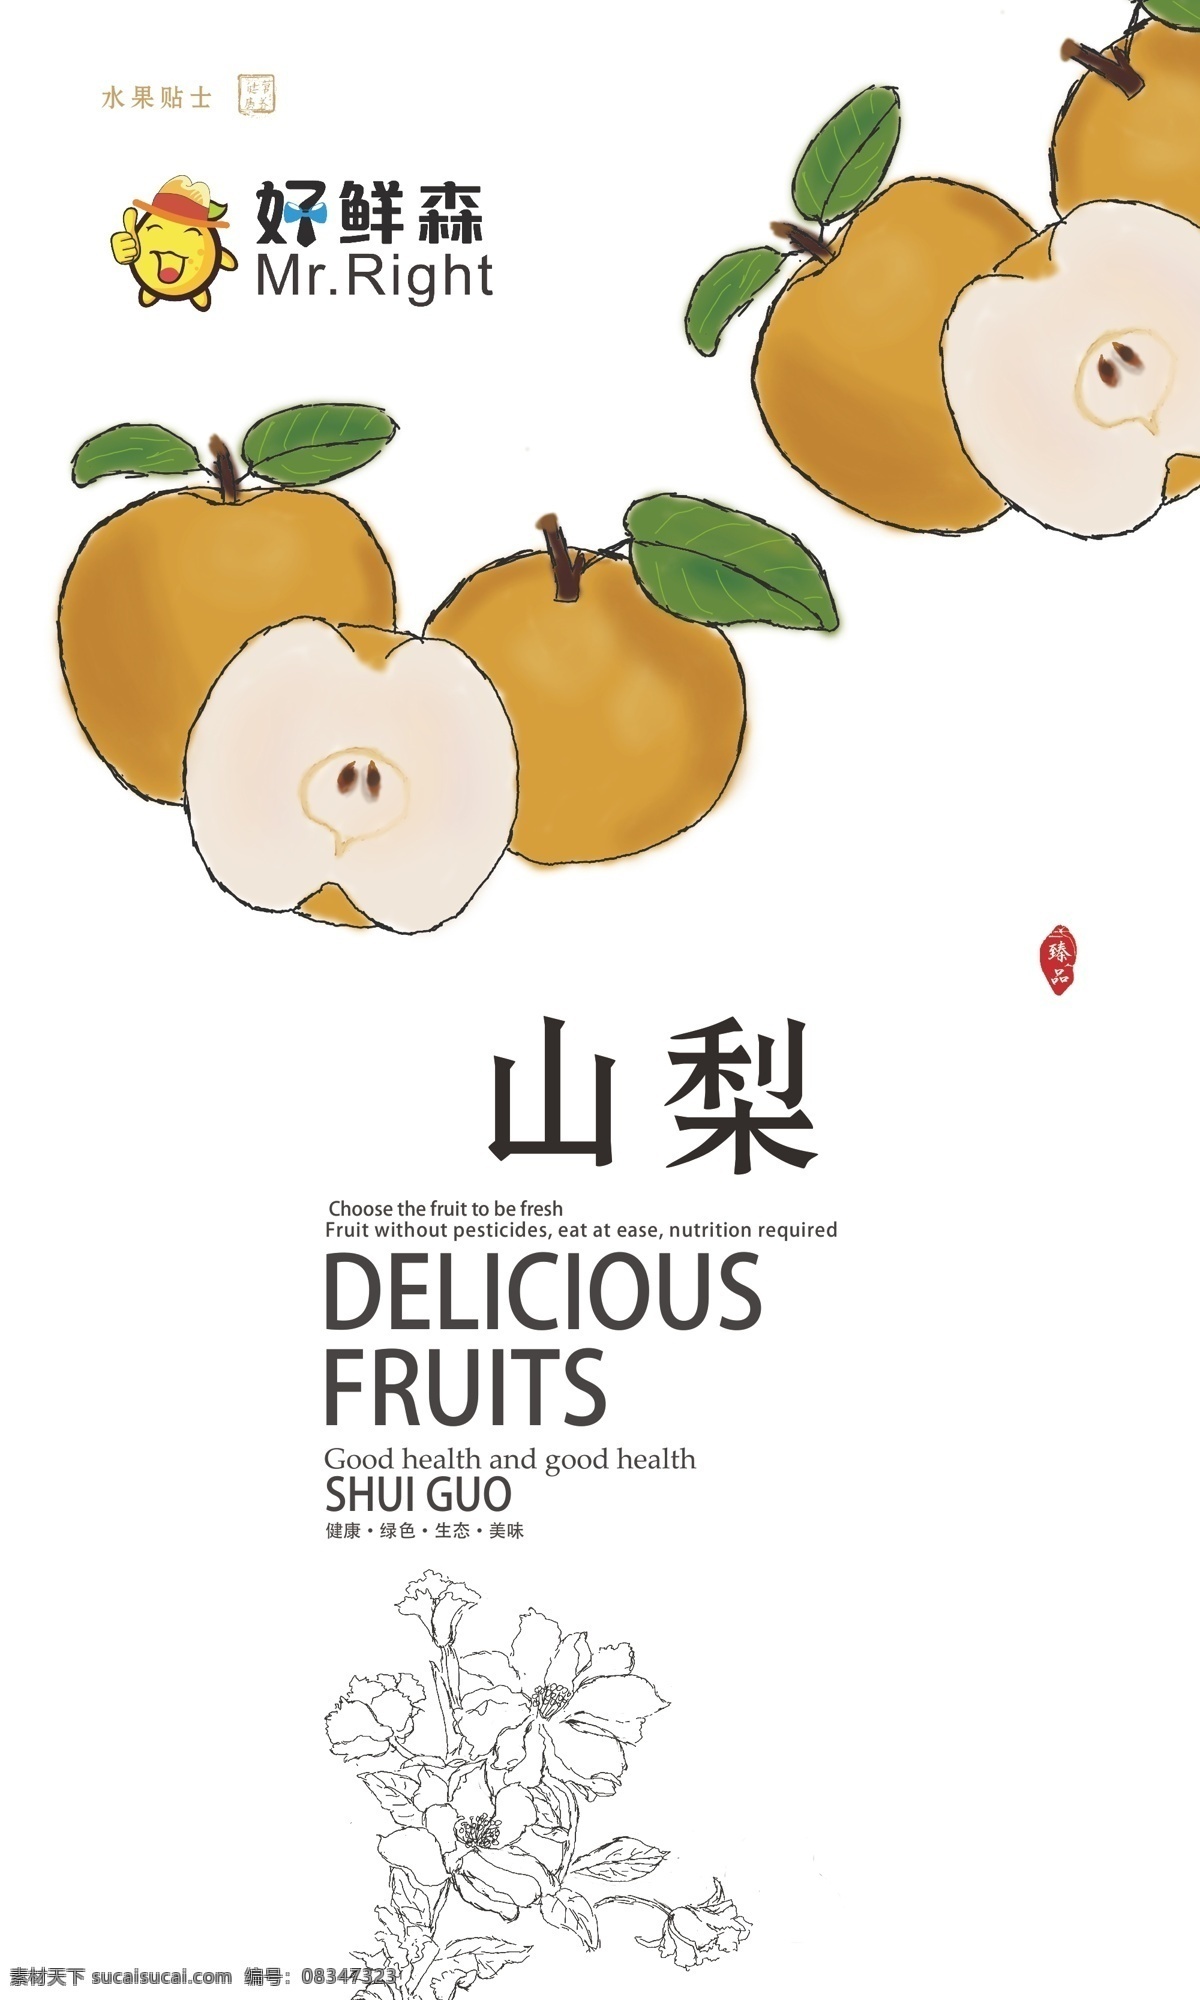 水果 海报 店 内 装饰 梨 手绘 水果海报 梨手绘 中国风 水果促销 店内装饰 水果个性海报 个性海报